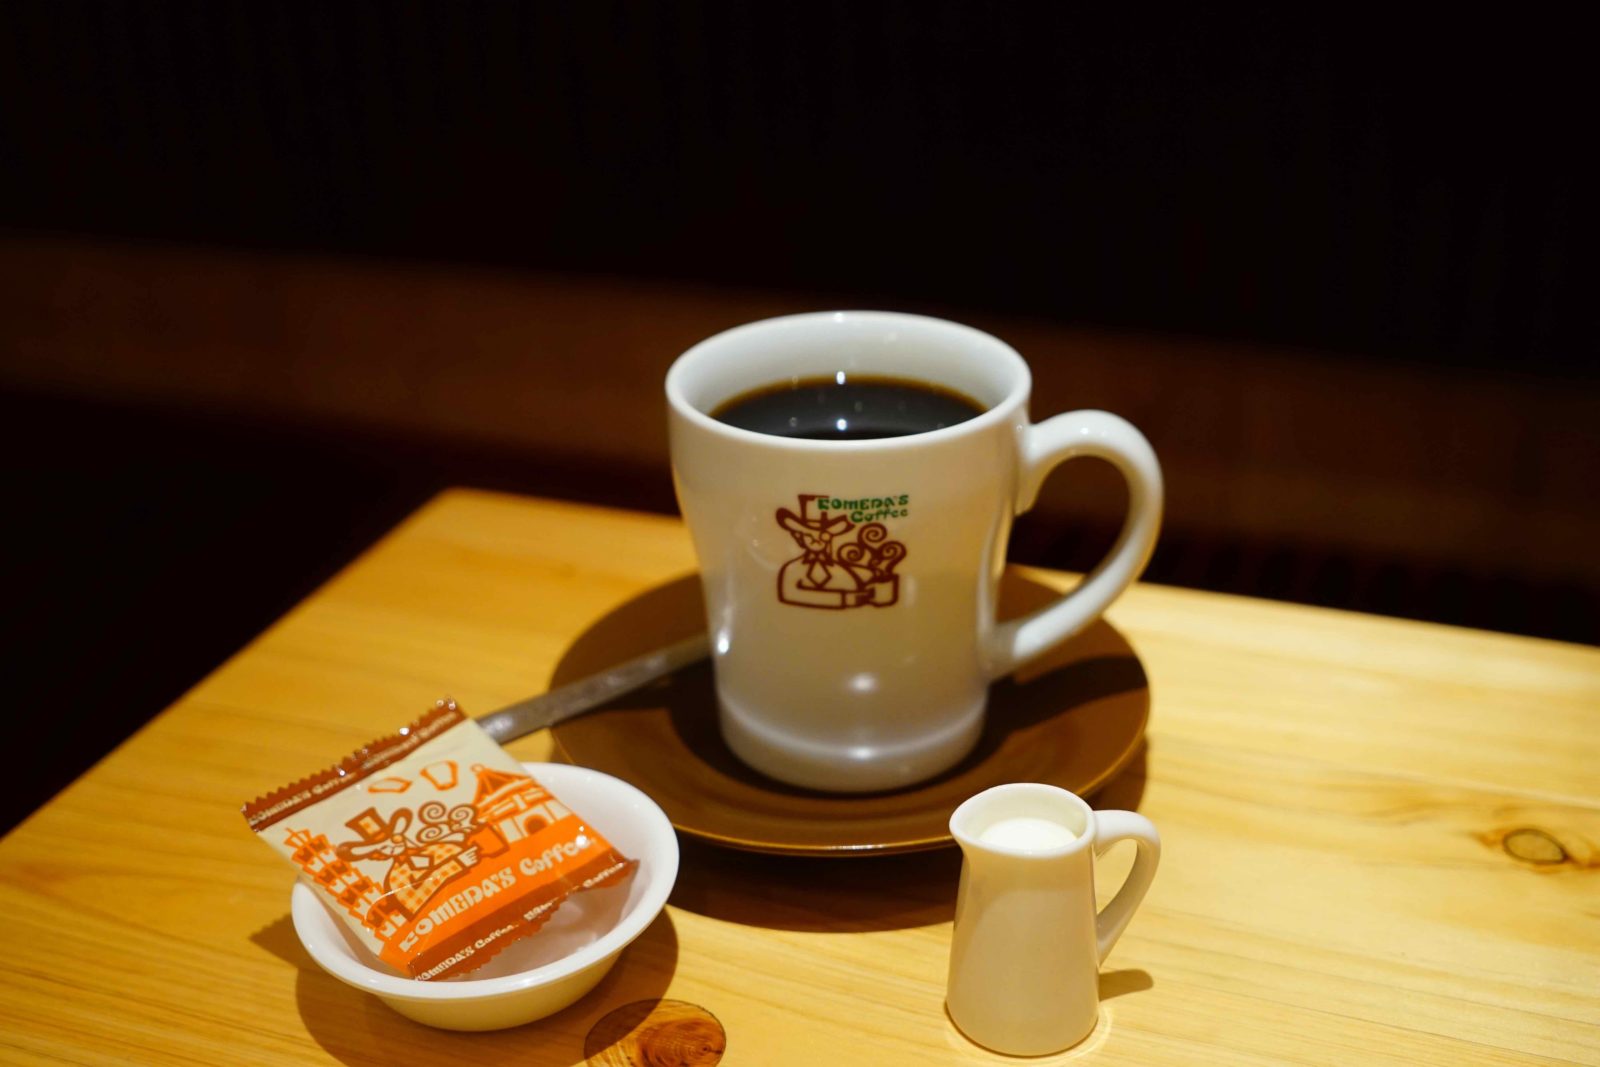 客美多 komeda's coffee 台北咖啡廳 台北美食